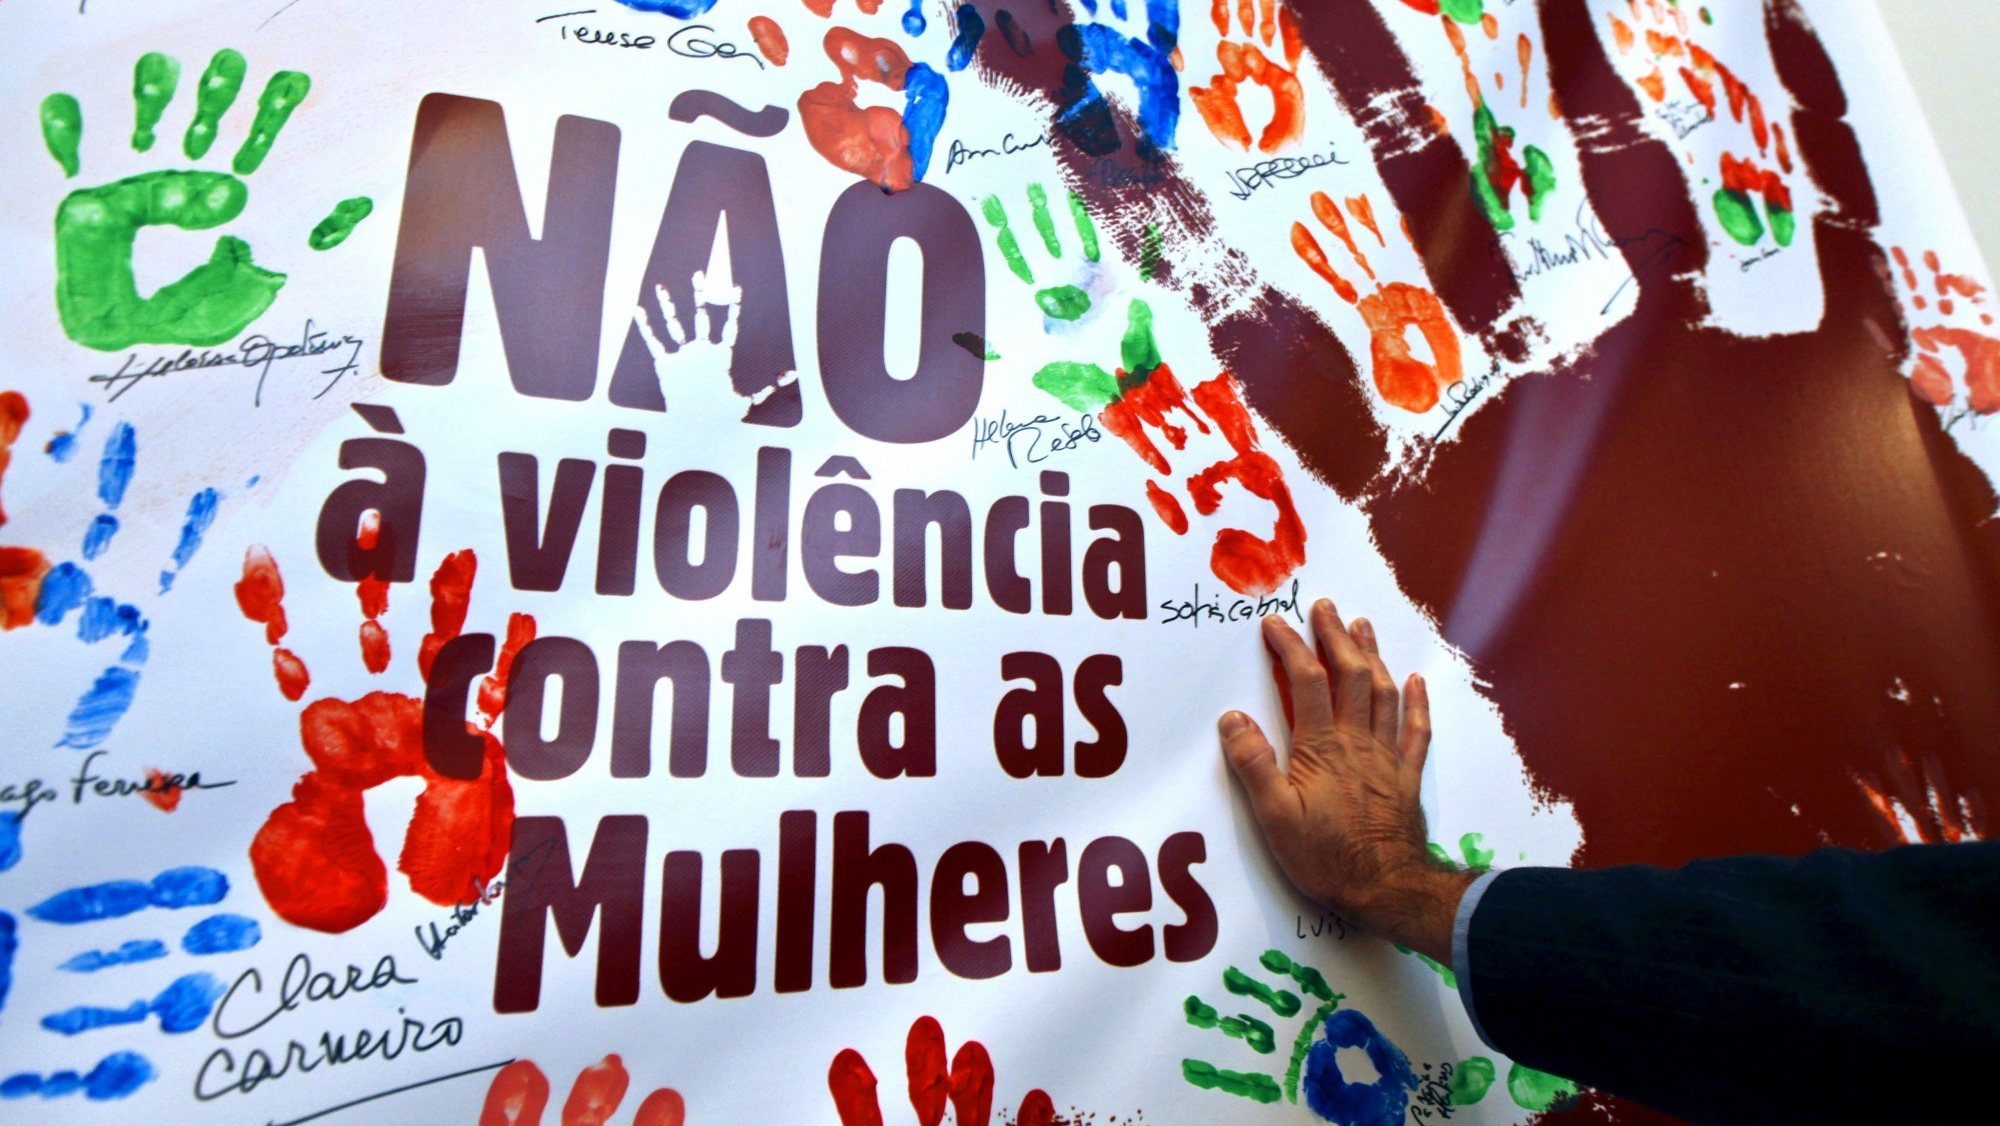 A presidência portuguesa do Conselho da União Europeia vai assinalar o décimo aniversário da Convenção de Istambul, um tratado pan-europeu de prevenção e combate à violência sobre mulheres e meninas